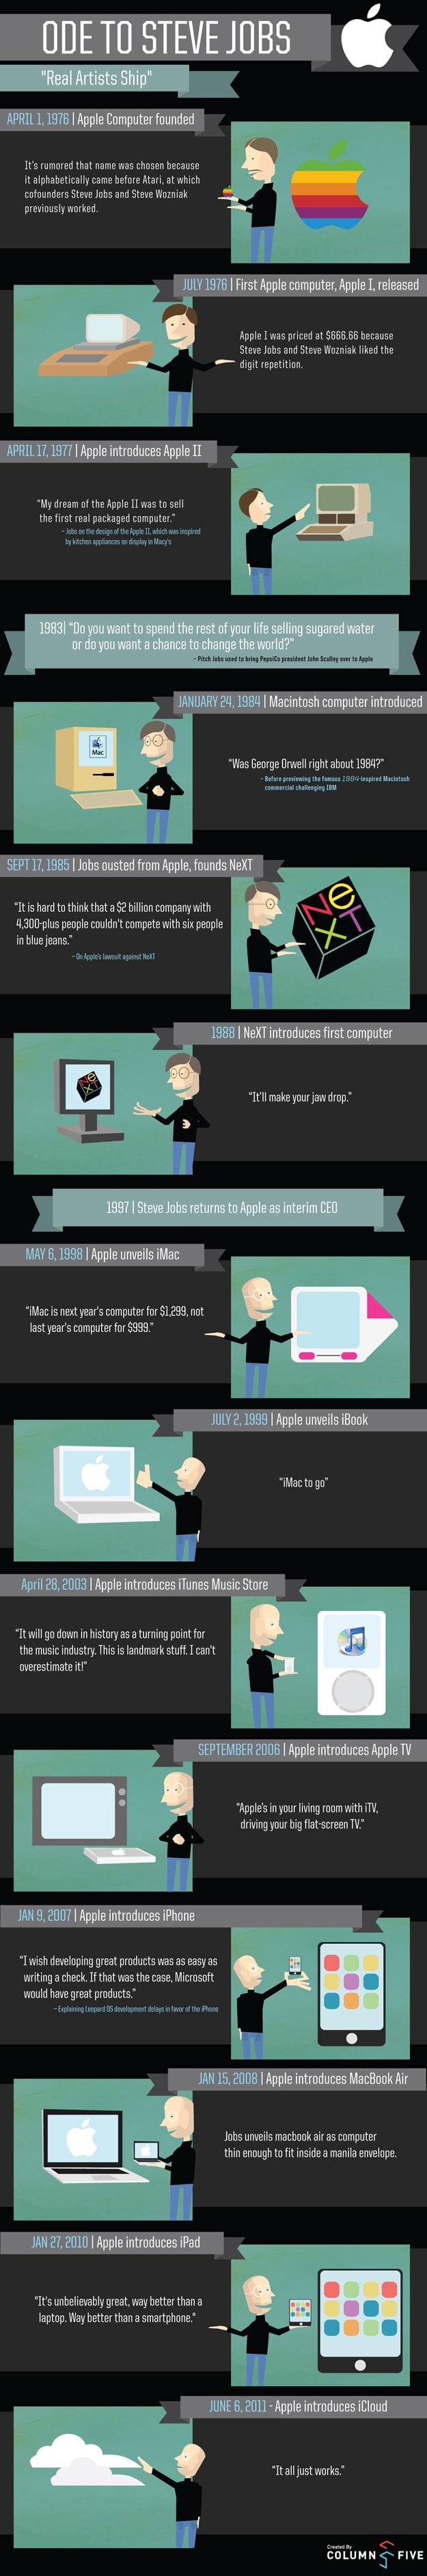 Memories Of Steve Jobs